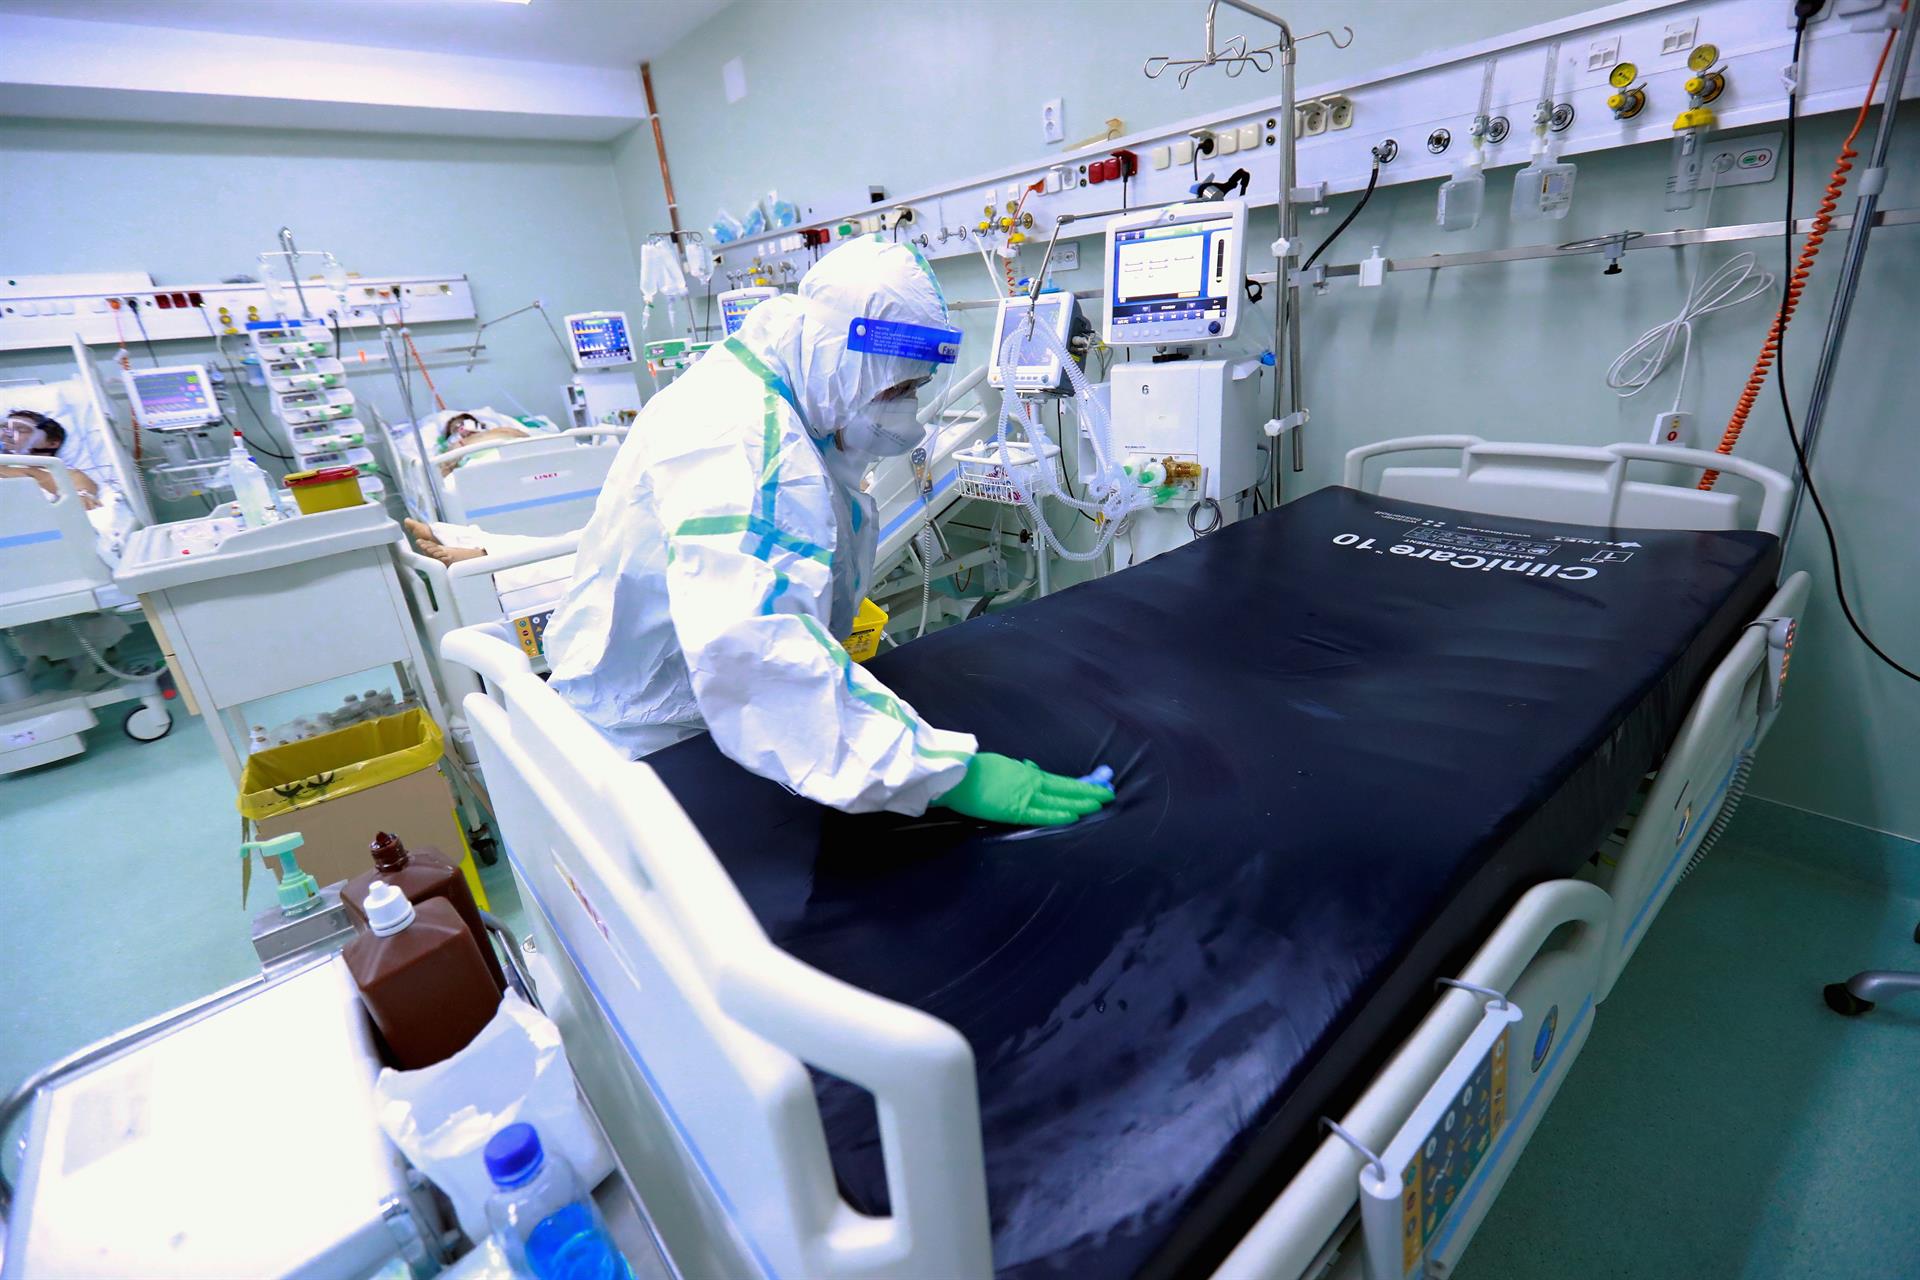 Mueren dos pacientes COVID al fallar el suministro de oxígeno en hospital de Rumanía